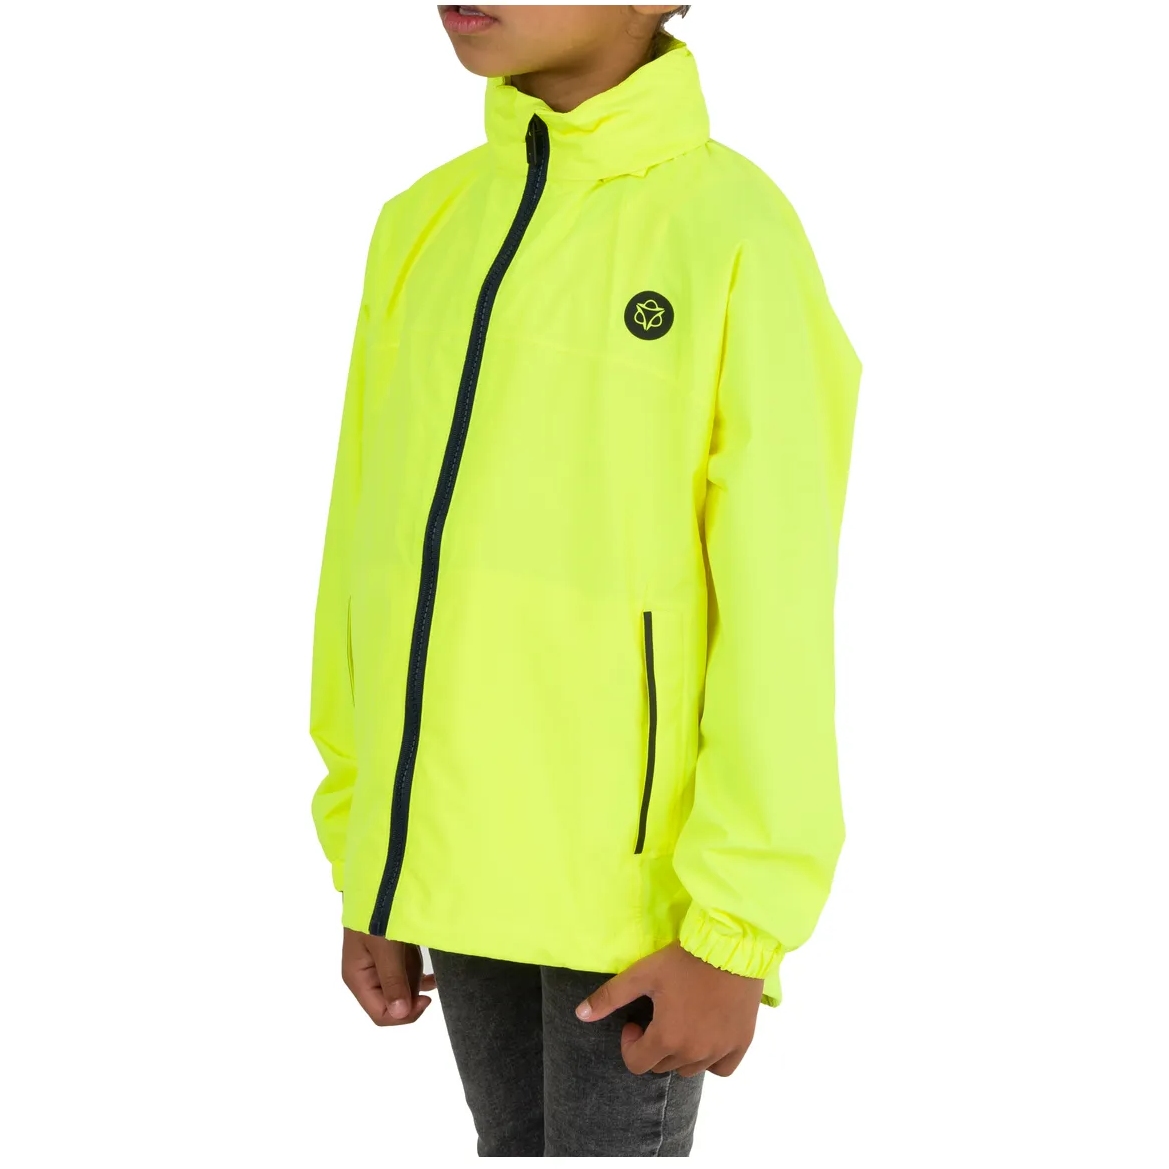 Produktbild von AGU Essential Go Kinder Regenjacke - neon yellow